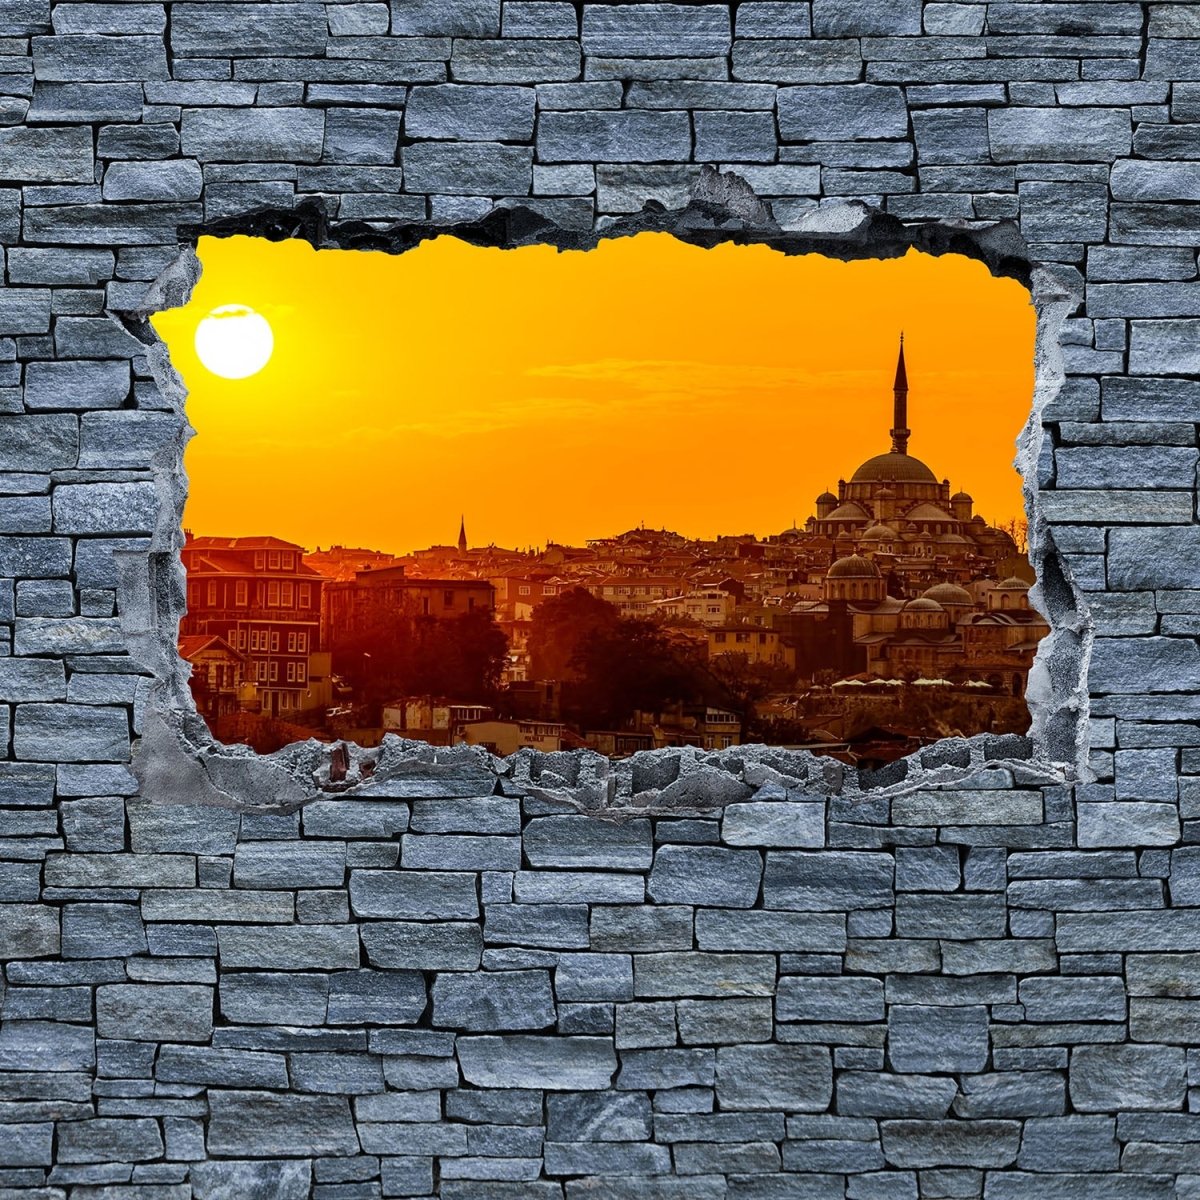 Beistelltisch 3D Sonnenuntergang Istanbul - grobe Steinmauer M0638 entdecken - Bild 2